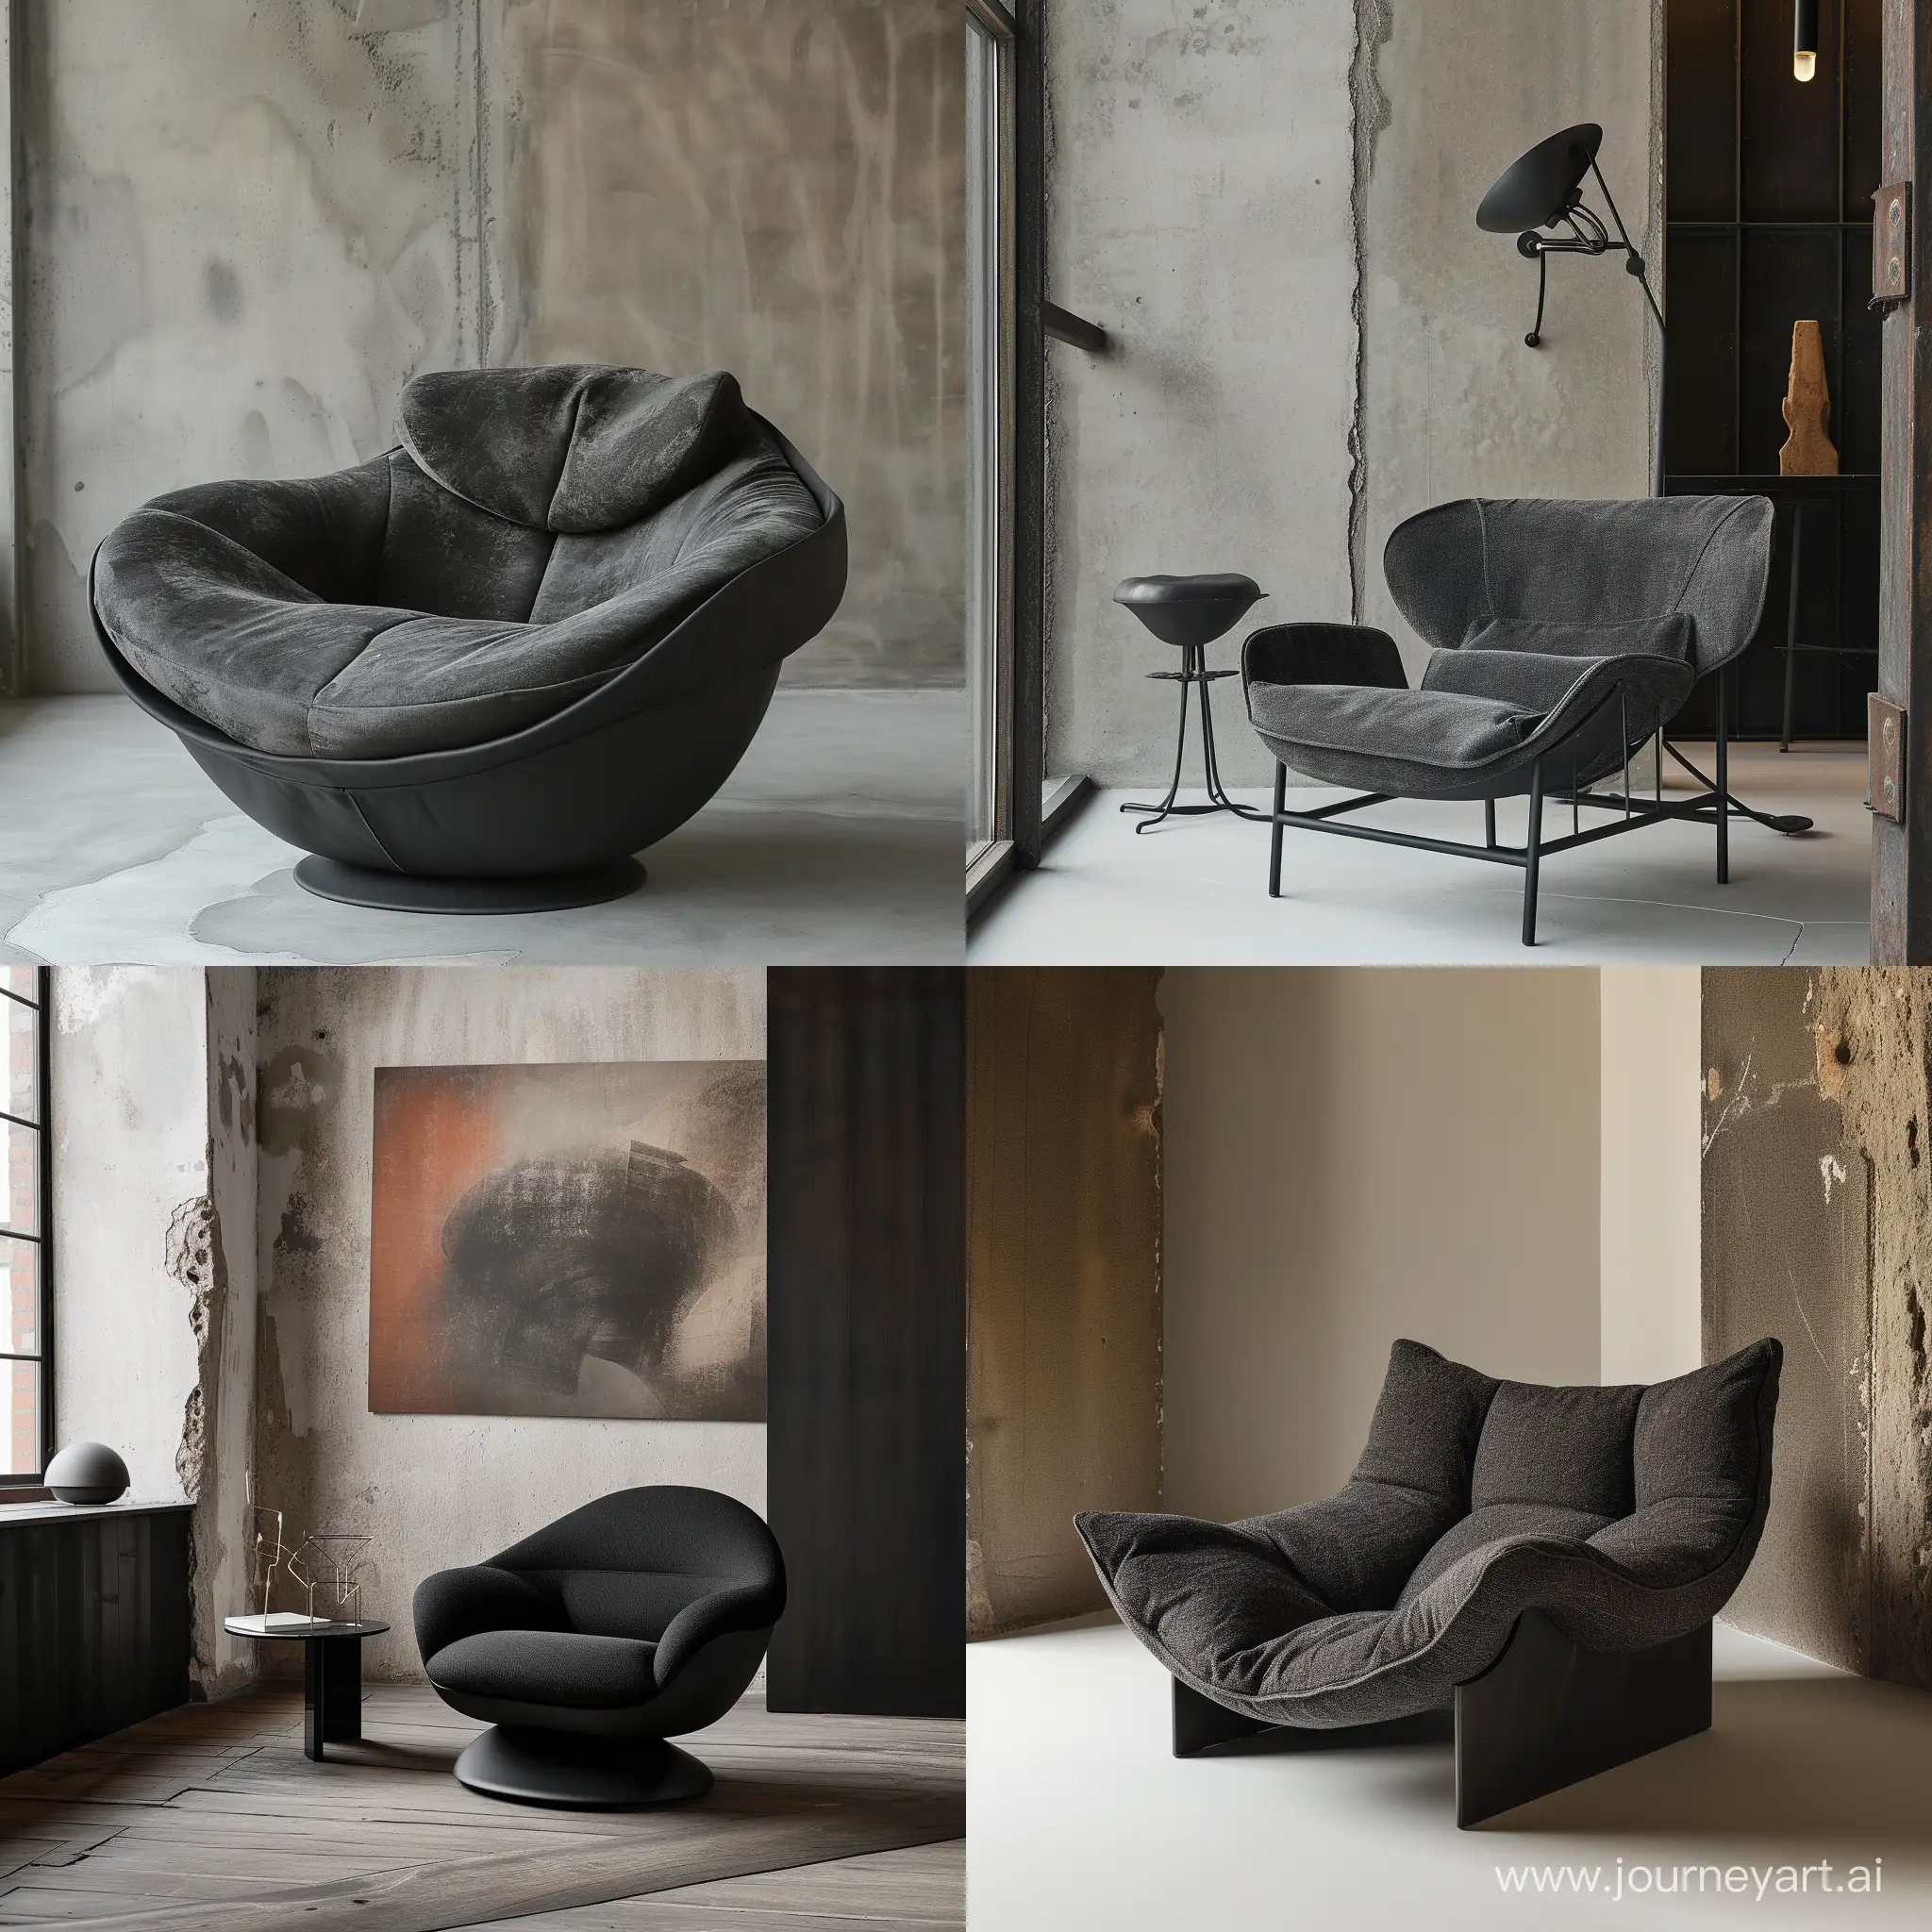 необычное кресло в современном стиле,  мягкая ткань, черное, ваби саби, стены лофт, минимализм
